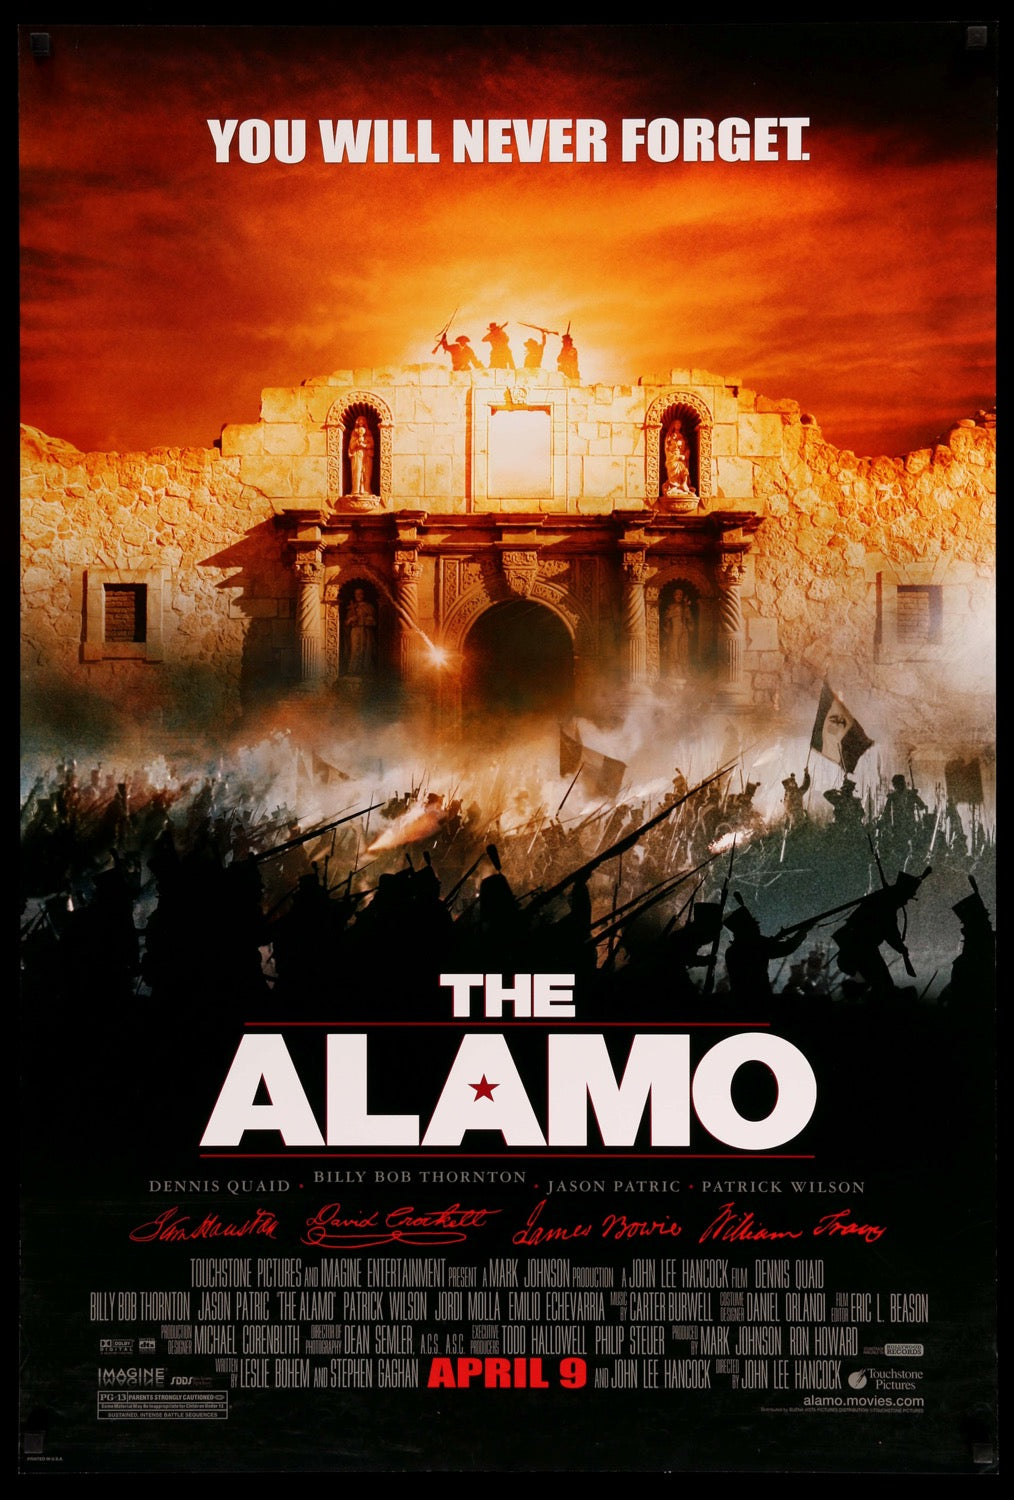 Alamo (2004) original movie poster for sale at Original Film Art